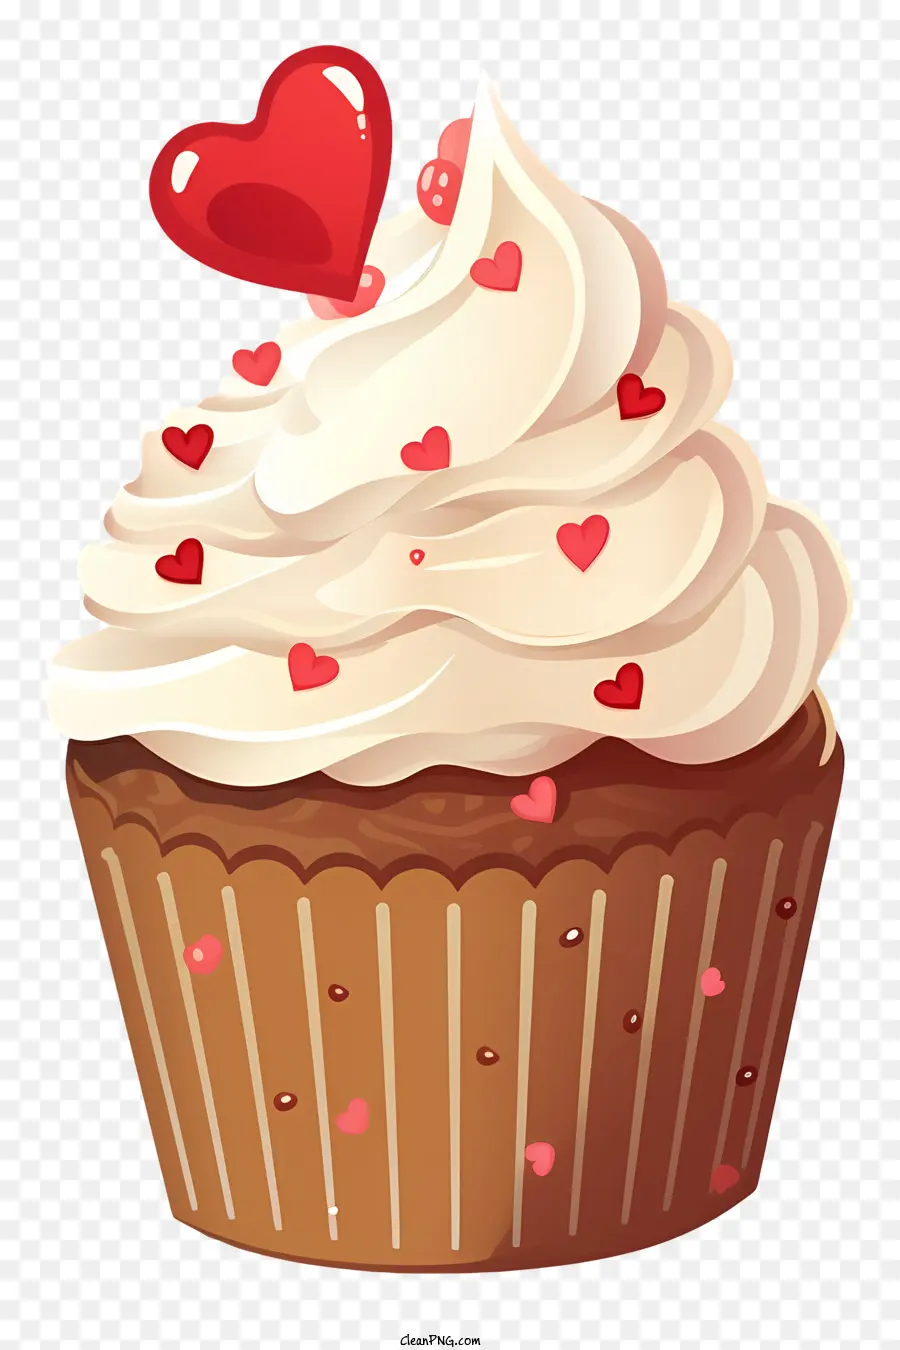 Cupcake Cioccolato Cupcake cremoso glassa rosso cuore rosso a forma di cuore a forma di cuore - Cupcake al cioccolato con cartoni animati dettagliati con spruzzi di cuore